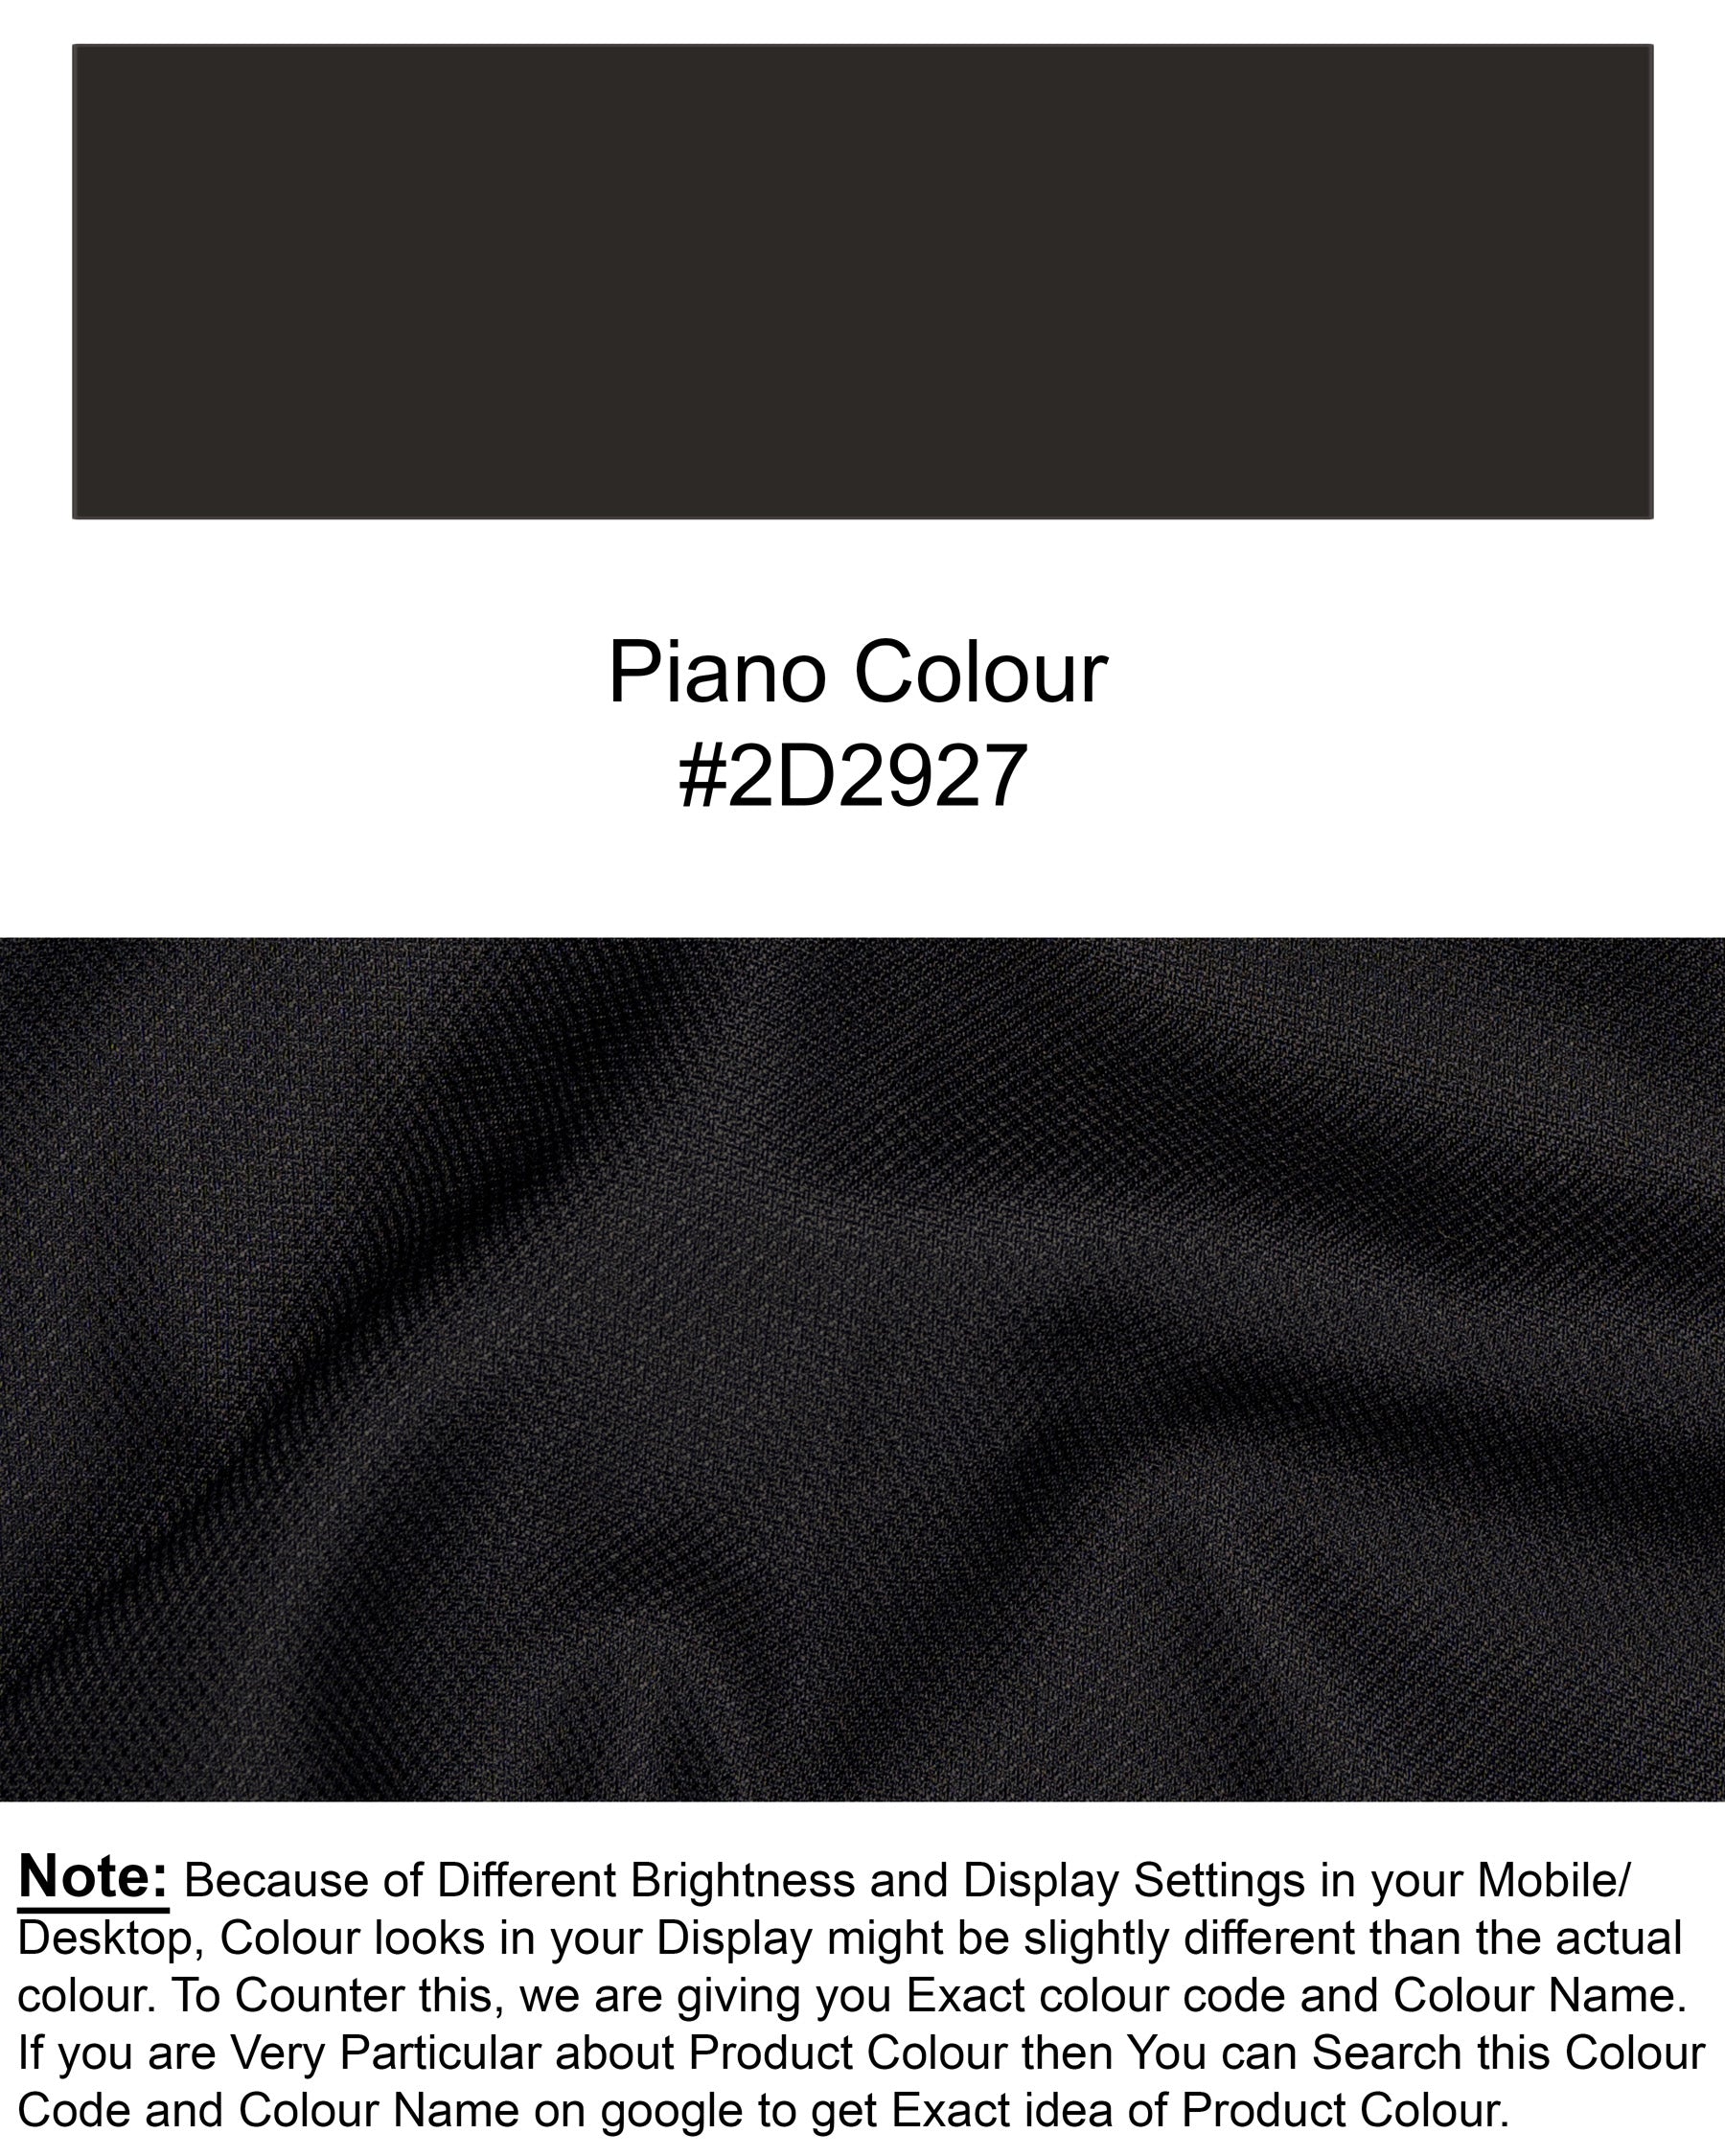 Piano Black Cross Buttoned Wool Rich Bandhgala Blazer BL1467-CBG-36,BL1467-CBG-38,BL1467-CBG-40,BL1467-CBG-42,BL1467-CBG-44,BL1467-CBG-46,BL1467-CBG-48,BL1467-CBG-50,BL1467-CBG-52,BL1467-CBG-54,BL1467-CBG-56,BL1467-CBG-58,BL1467-CBG-60